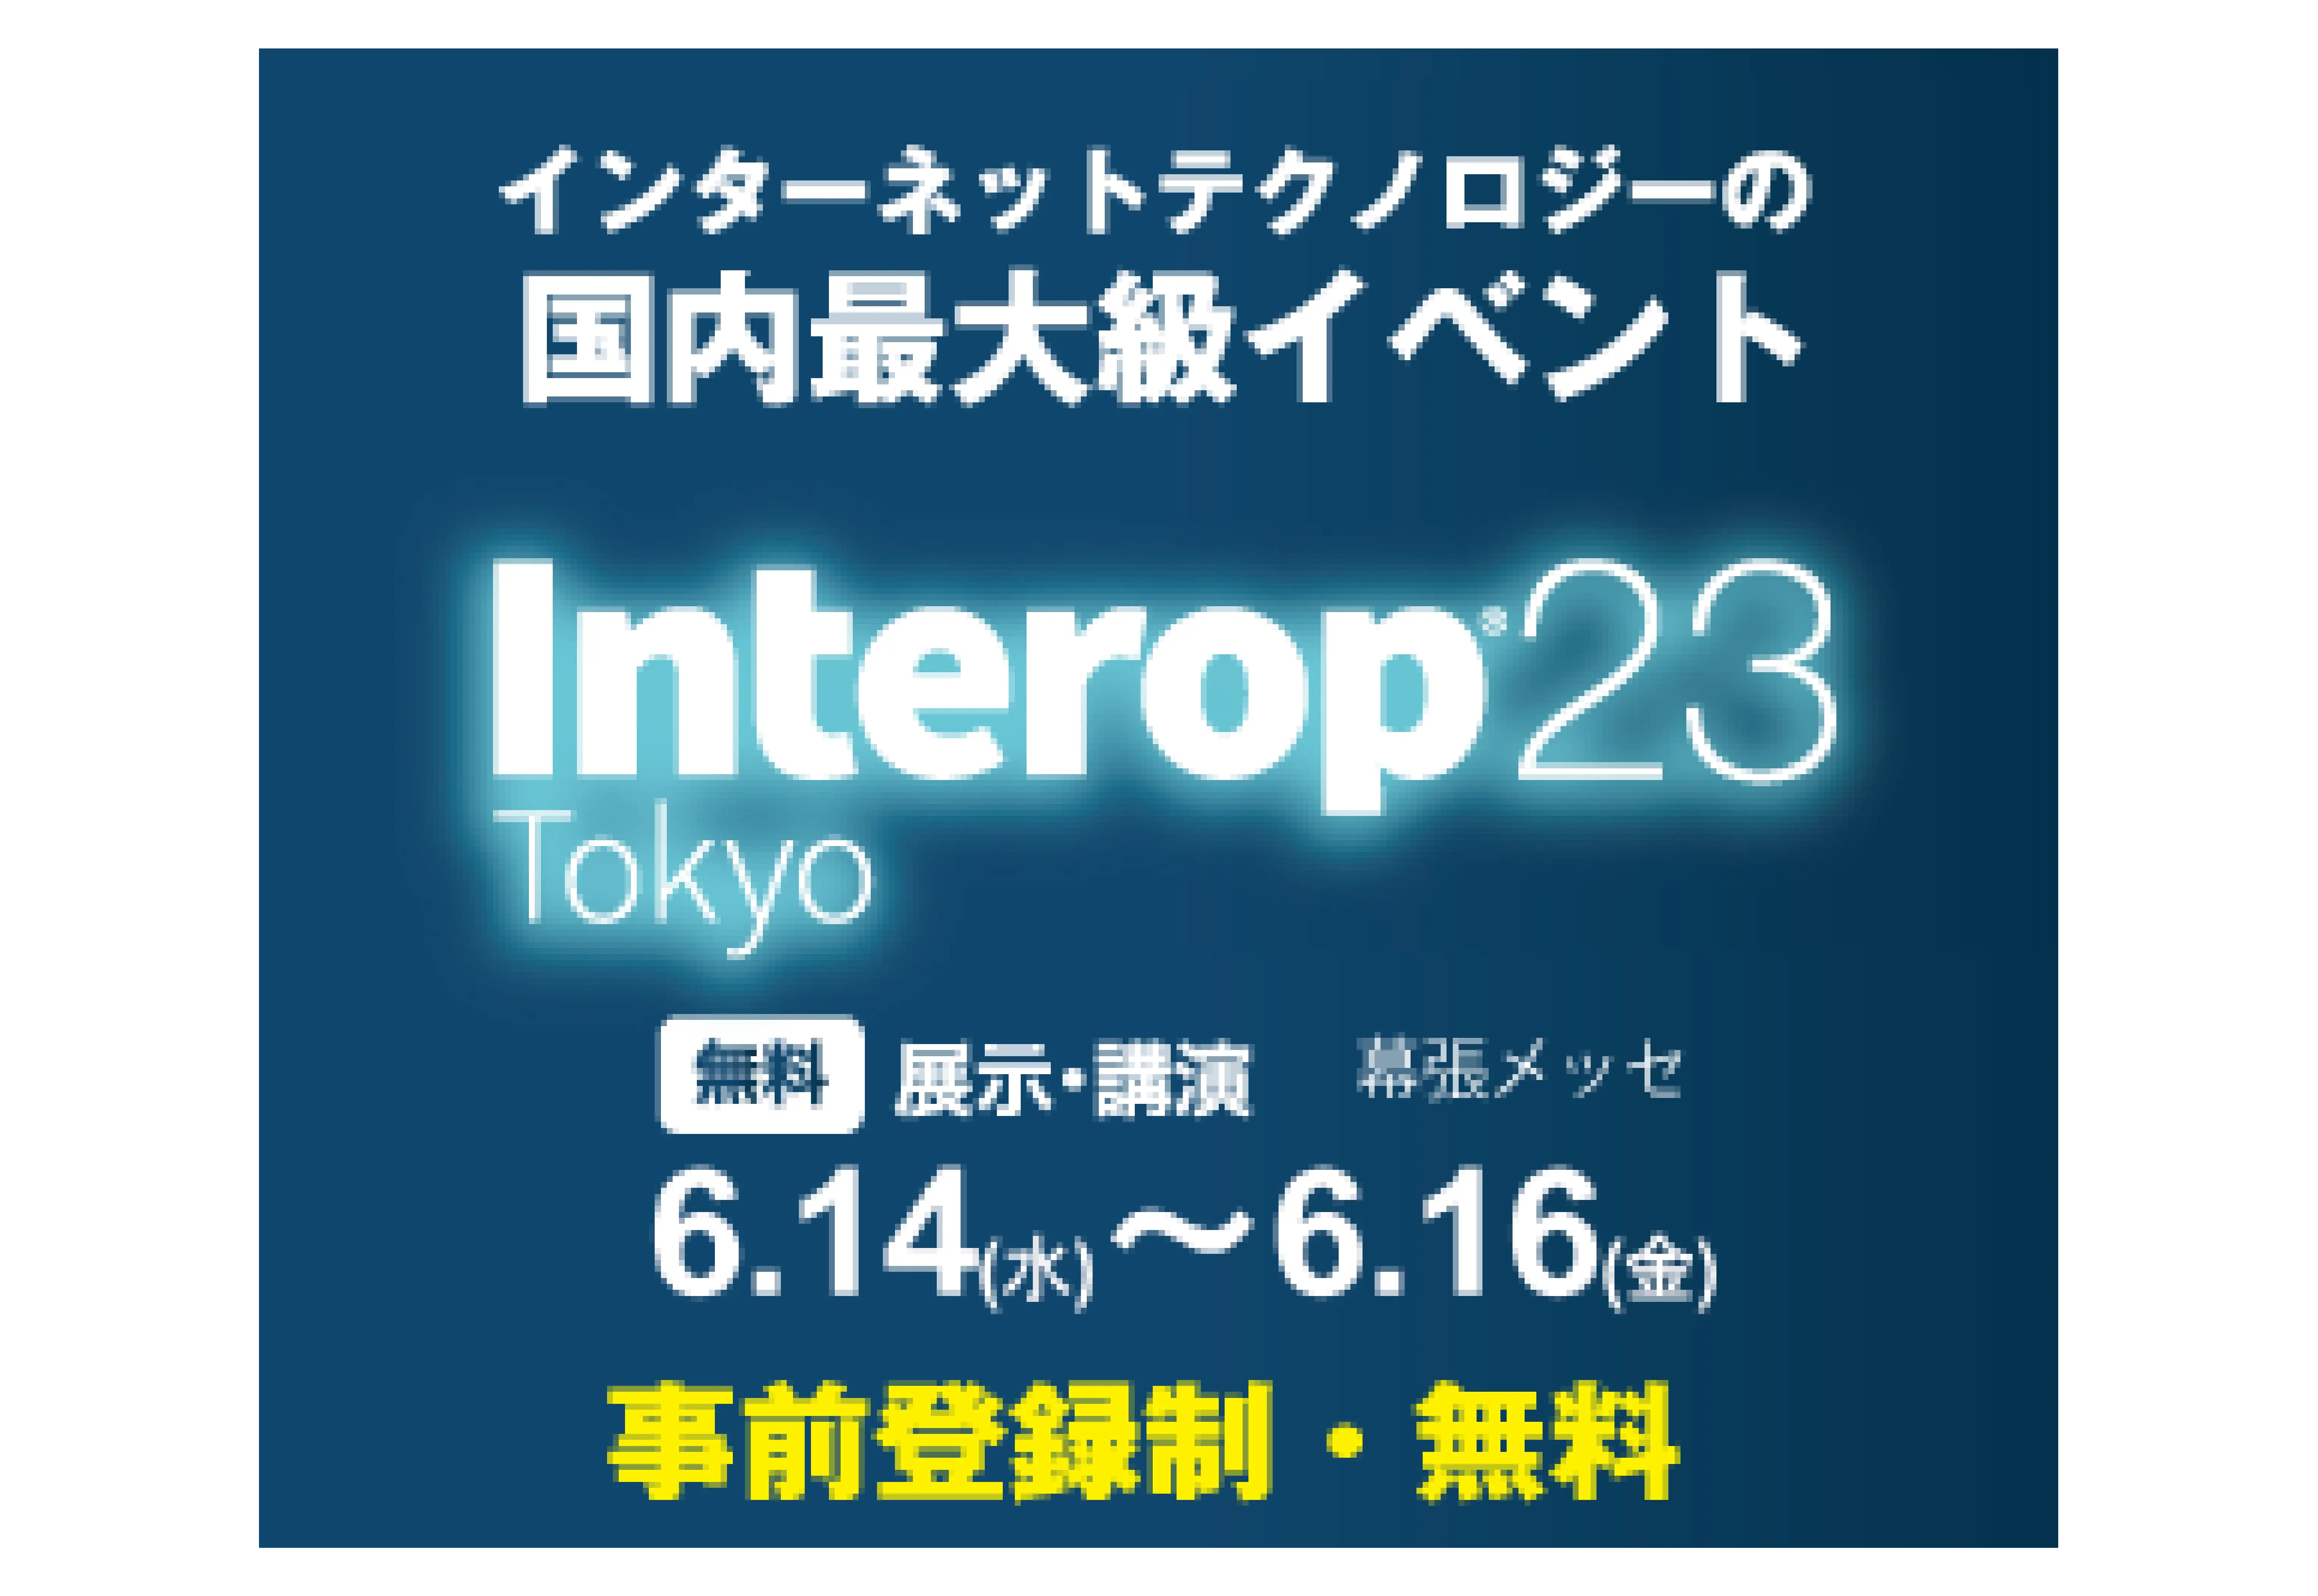 Interop23